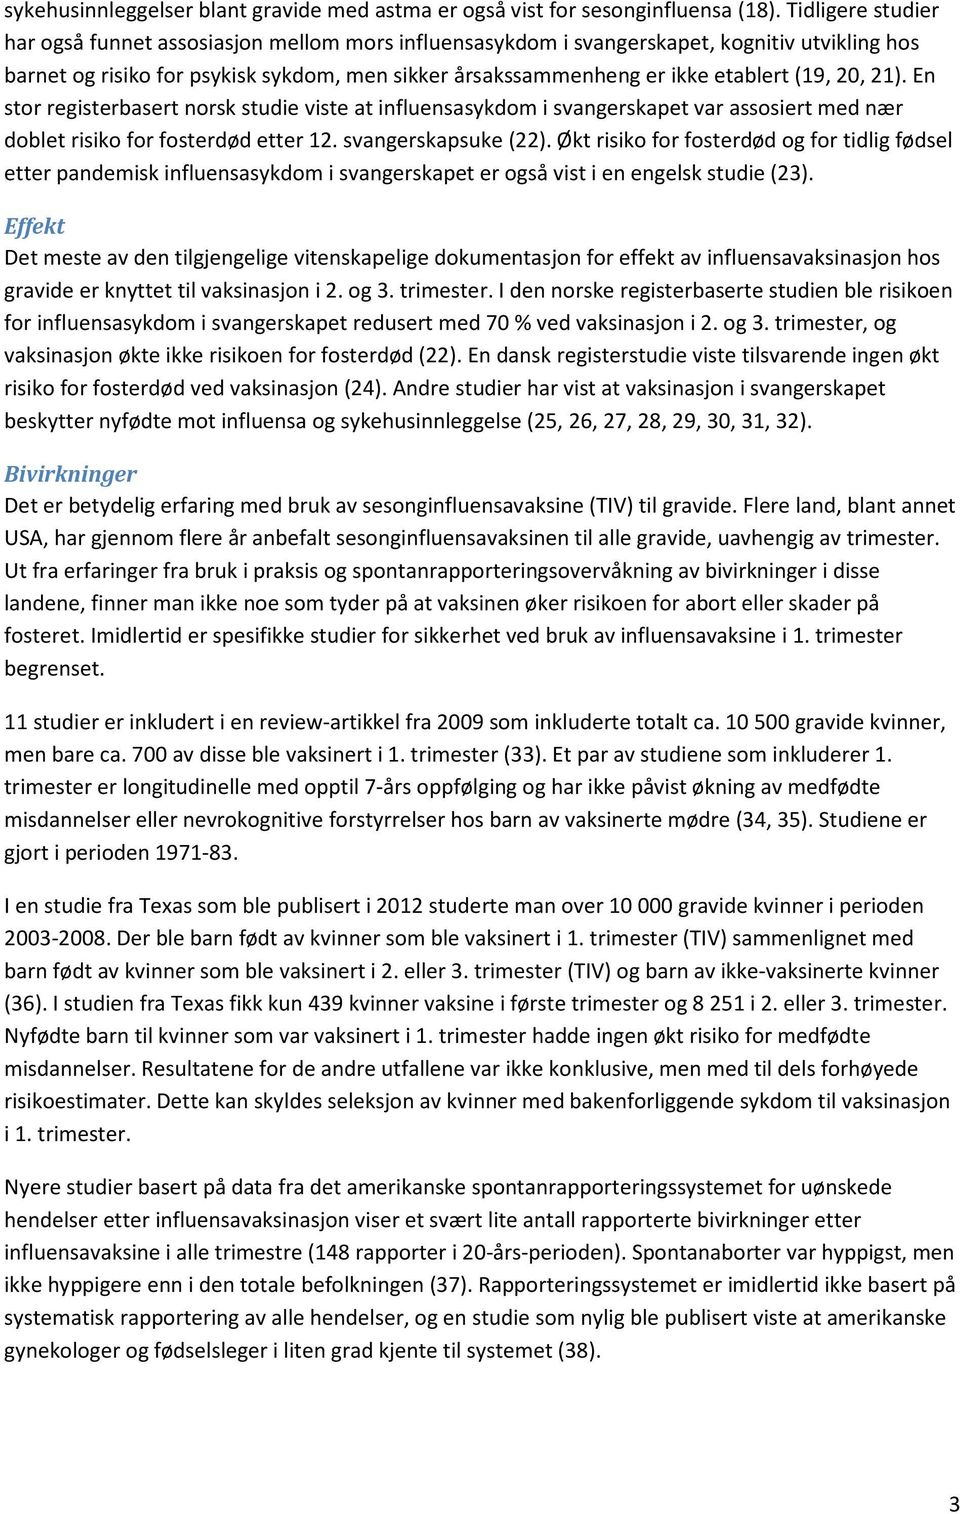 (19, 20, 21). En stor registerbasert norsk studie viste at influensasykdom i svangerskapet var assosiert med nær doblet risiko for fosterdød etter 12. svangerskapsuke (22).